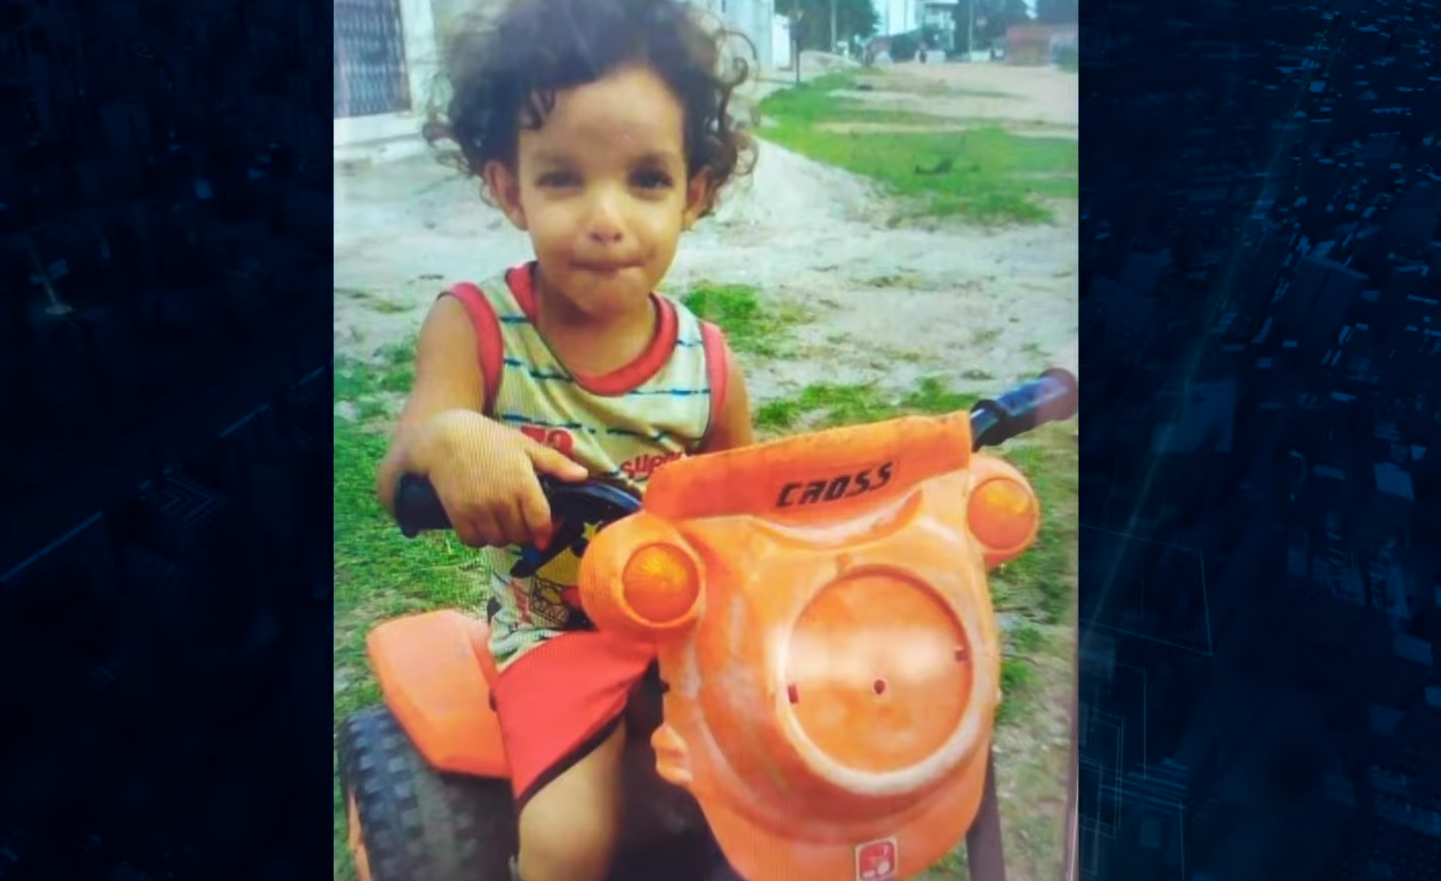 Israel Filho, de 5 anos, faleceu após um incêndio na casa que morava com a família